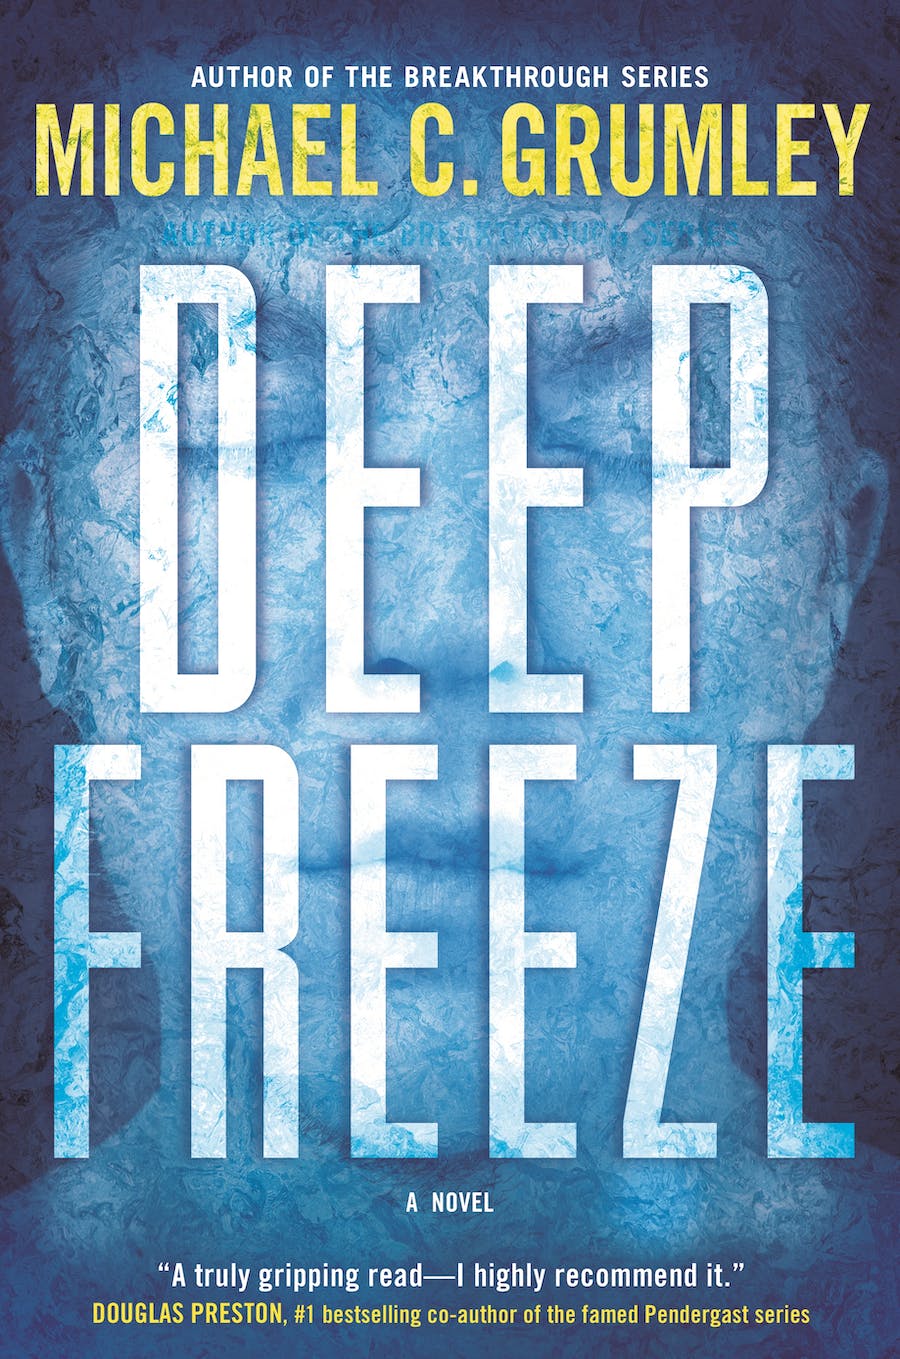 Deep Freeze: A Novel